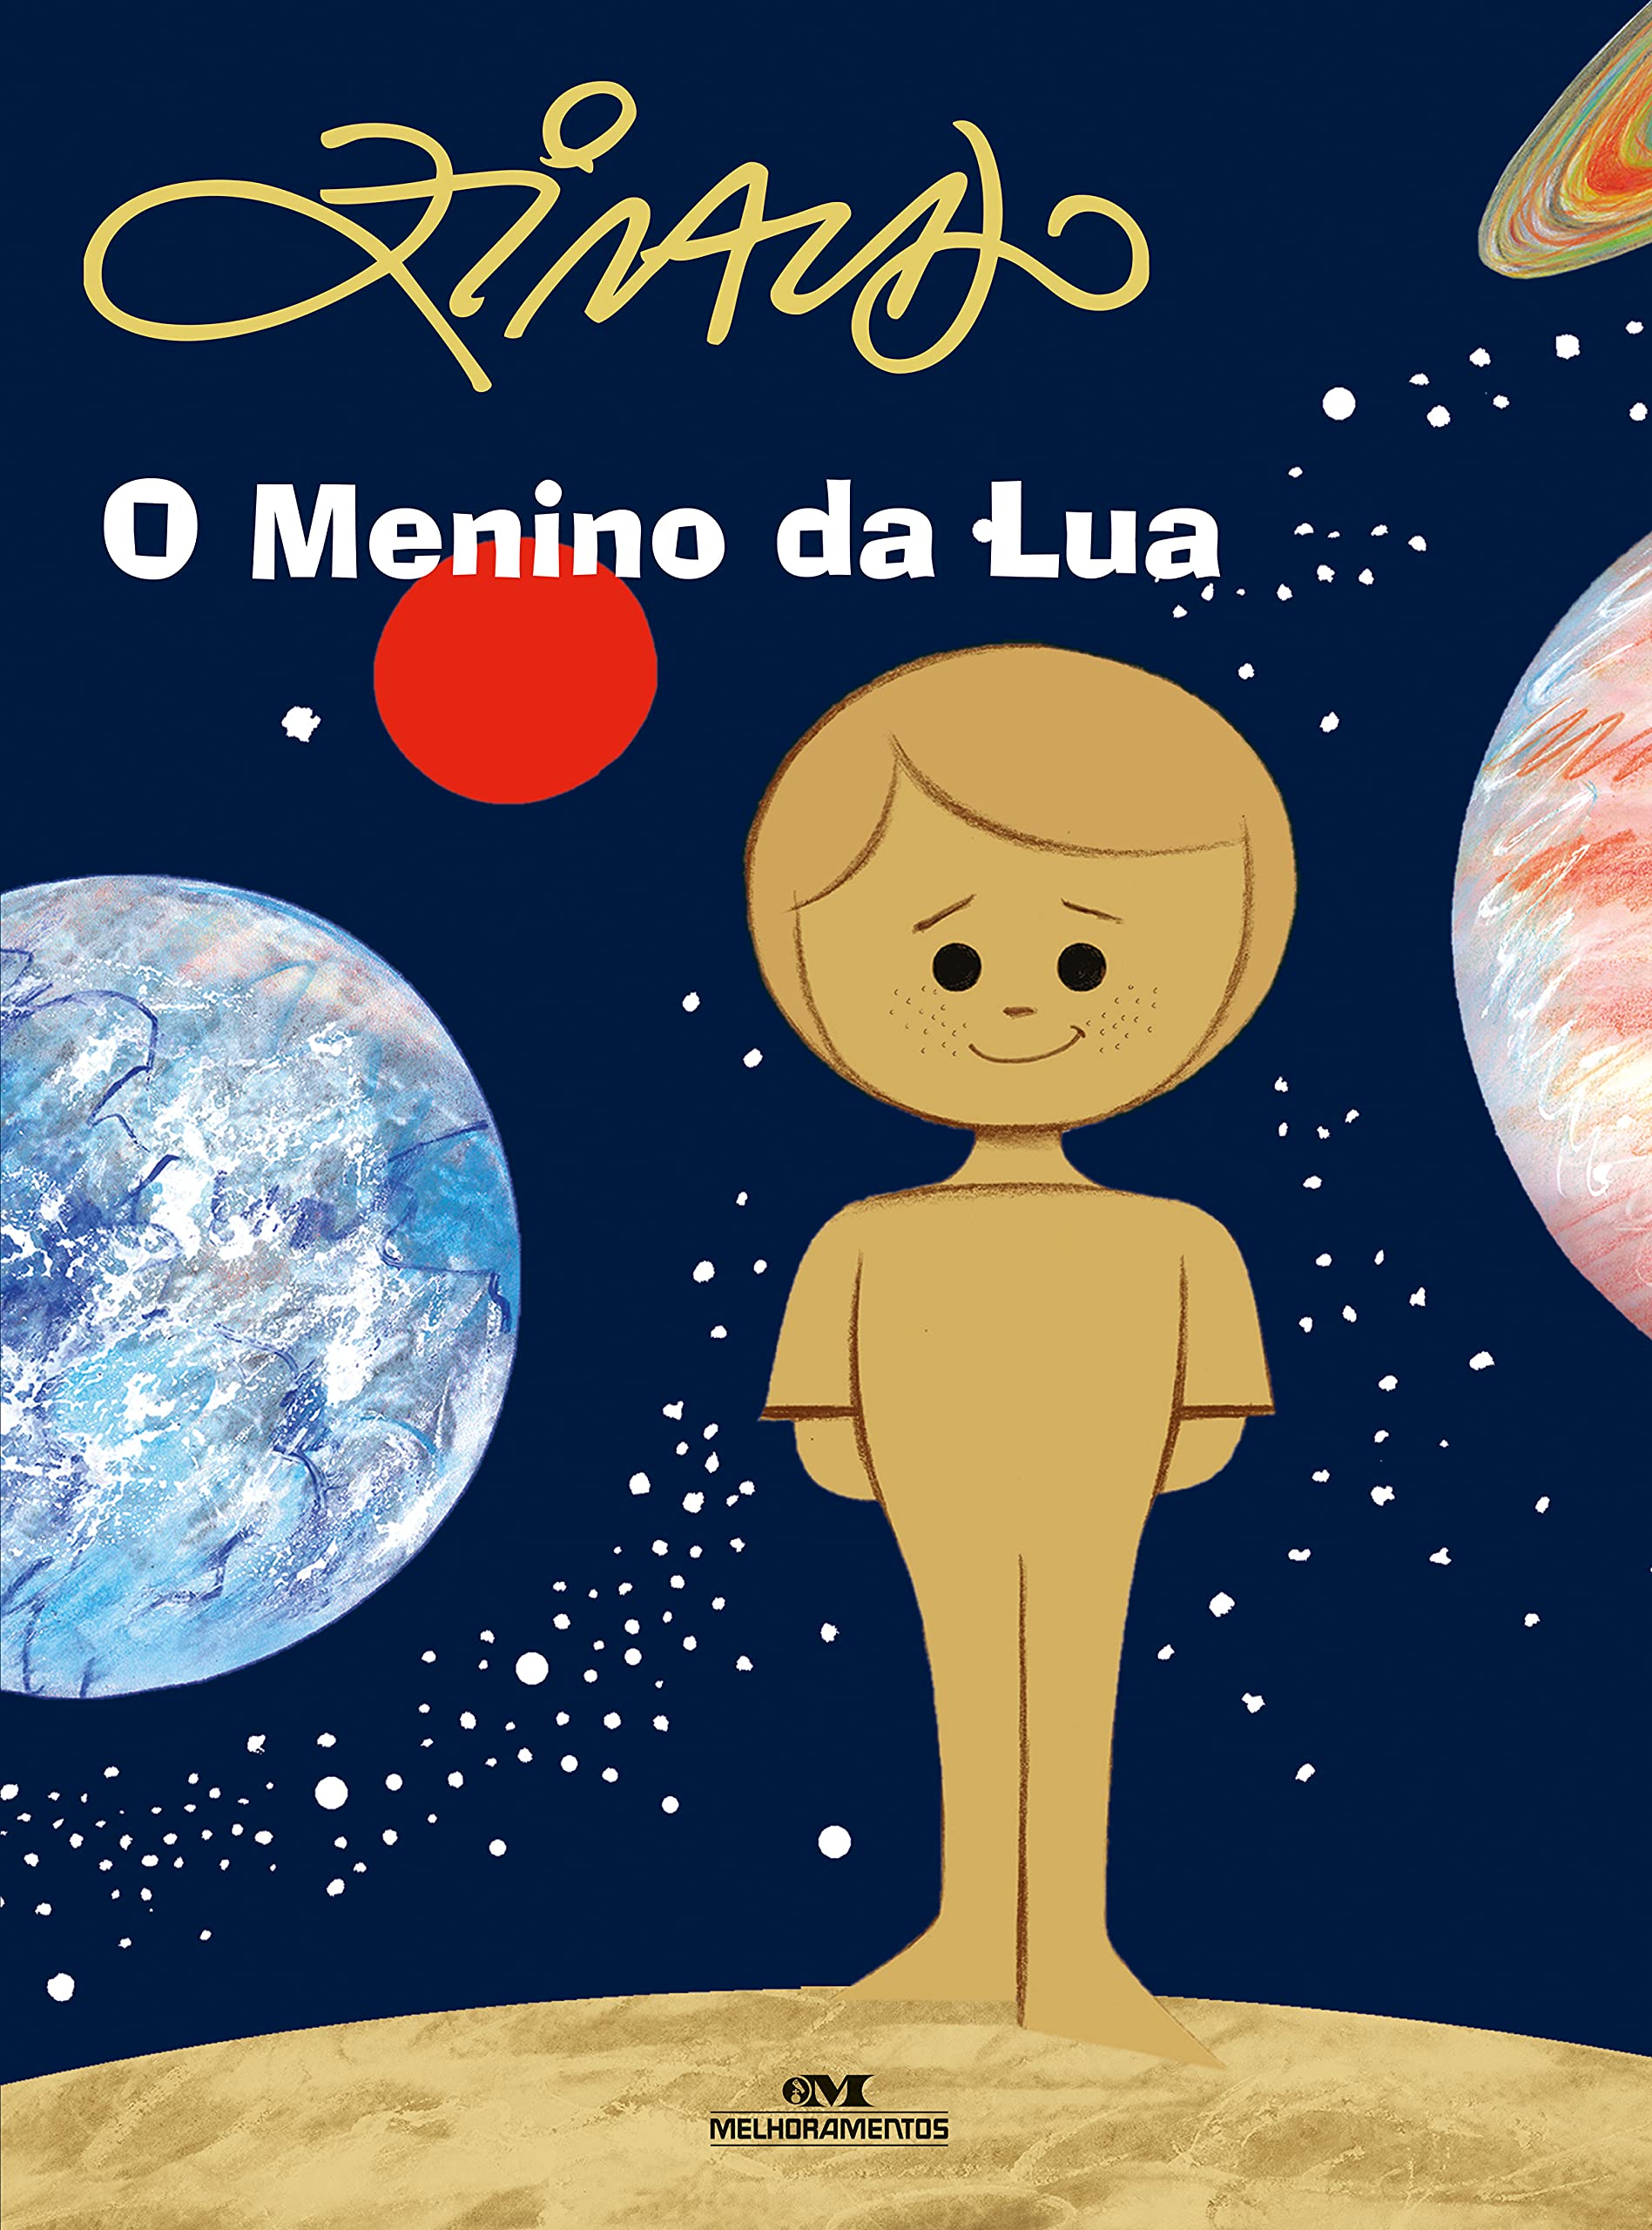 Capa do livro "O menino da lua", de Ziraldo. A capa mostra um menino inteiro em tons de bege. No fundo, planetas do sistema solar.